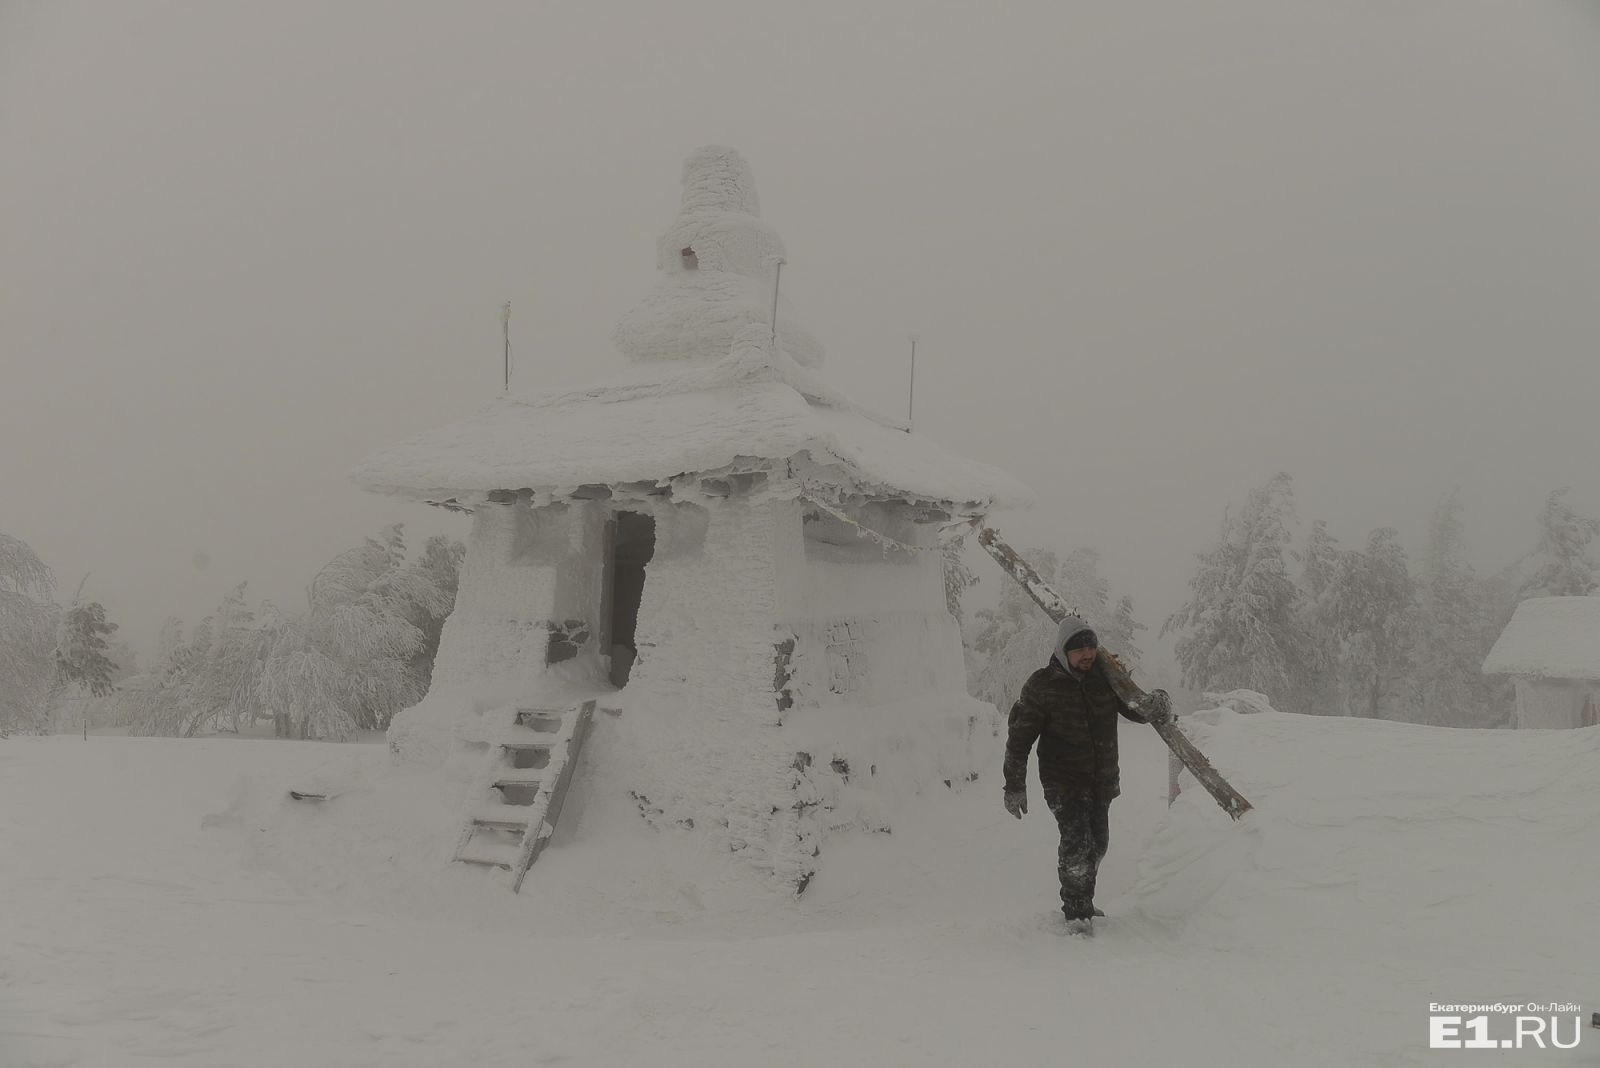 Из-за снега ступы буддистов практически не видно